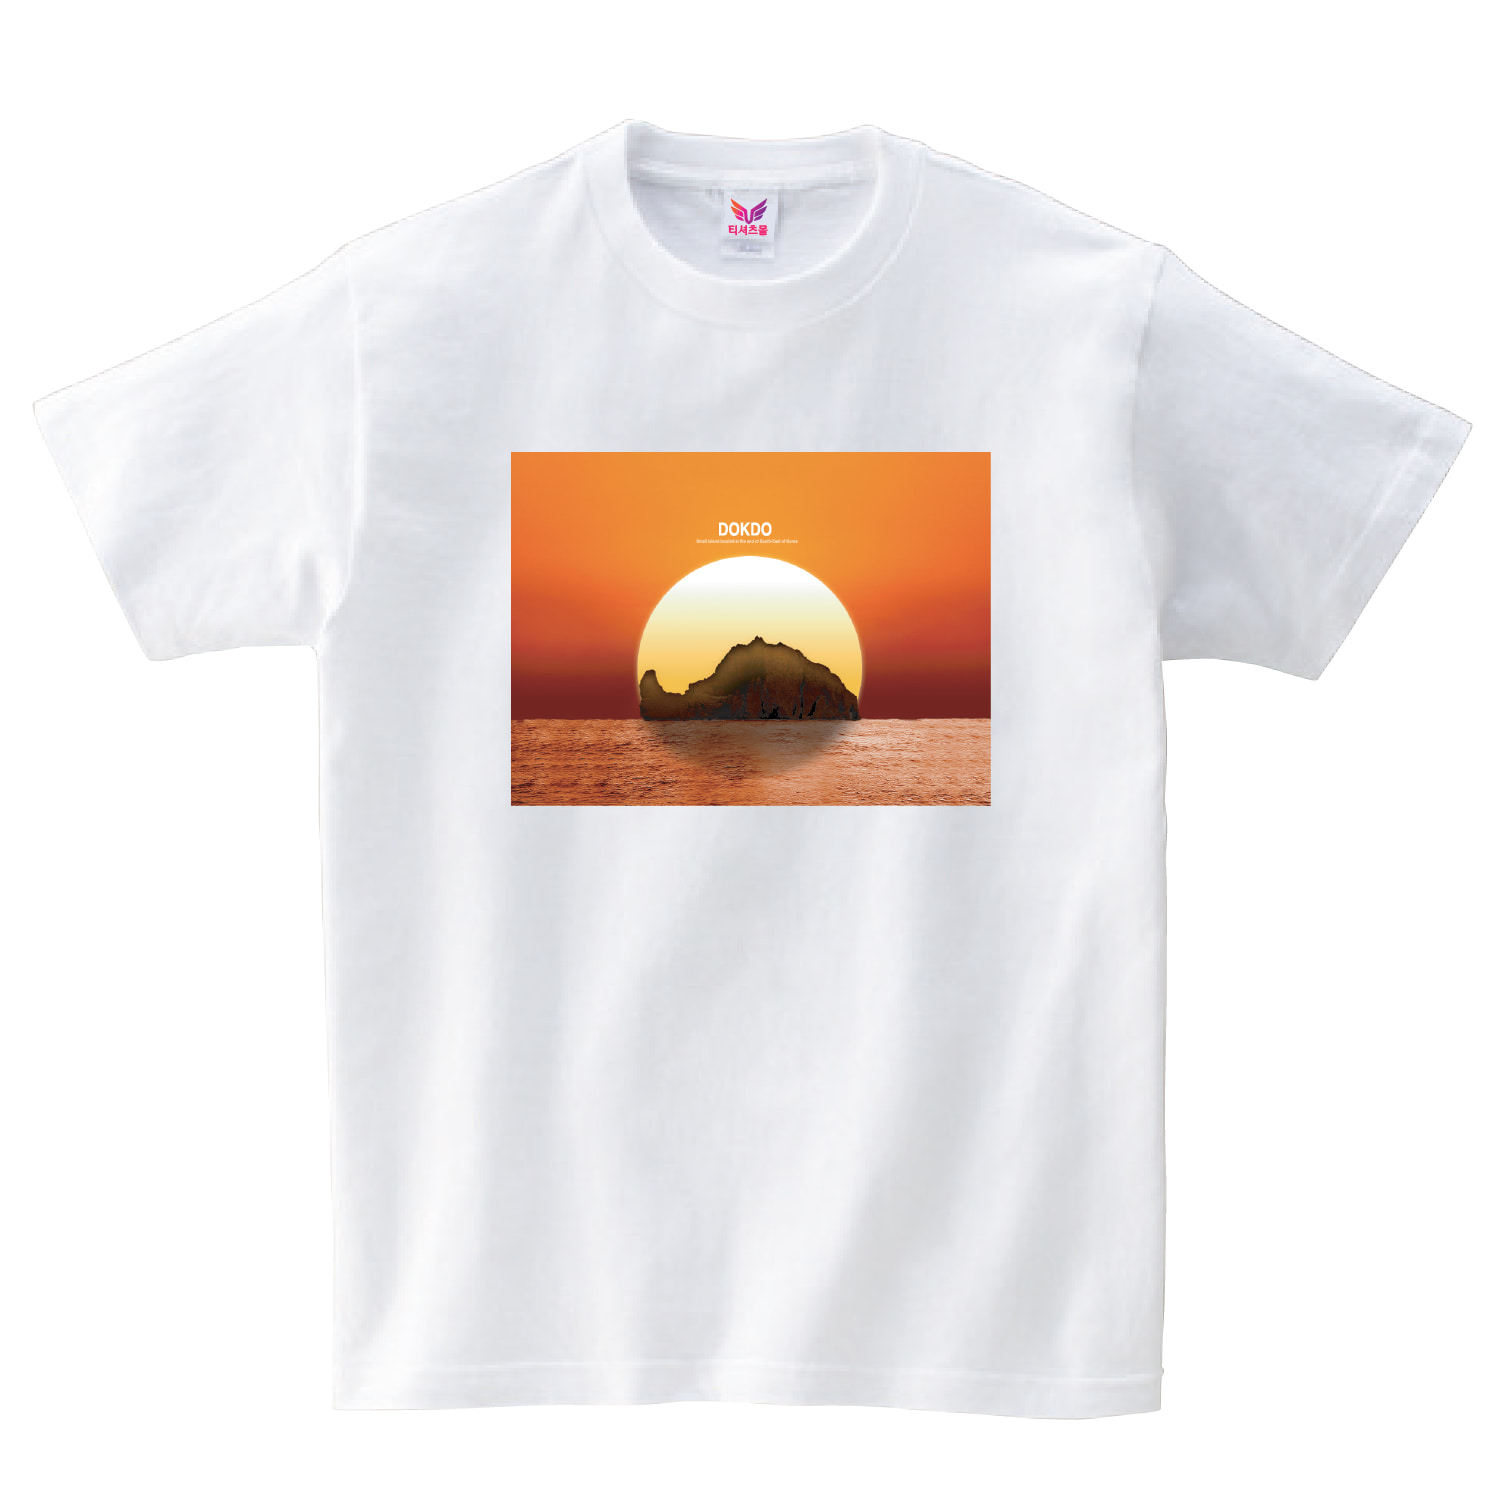 나라사랑 티셔츠 5. 독도 티셔츠 (단면)